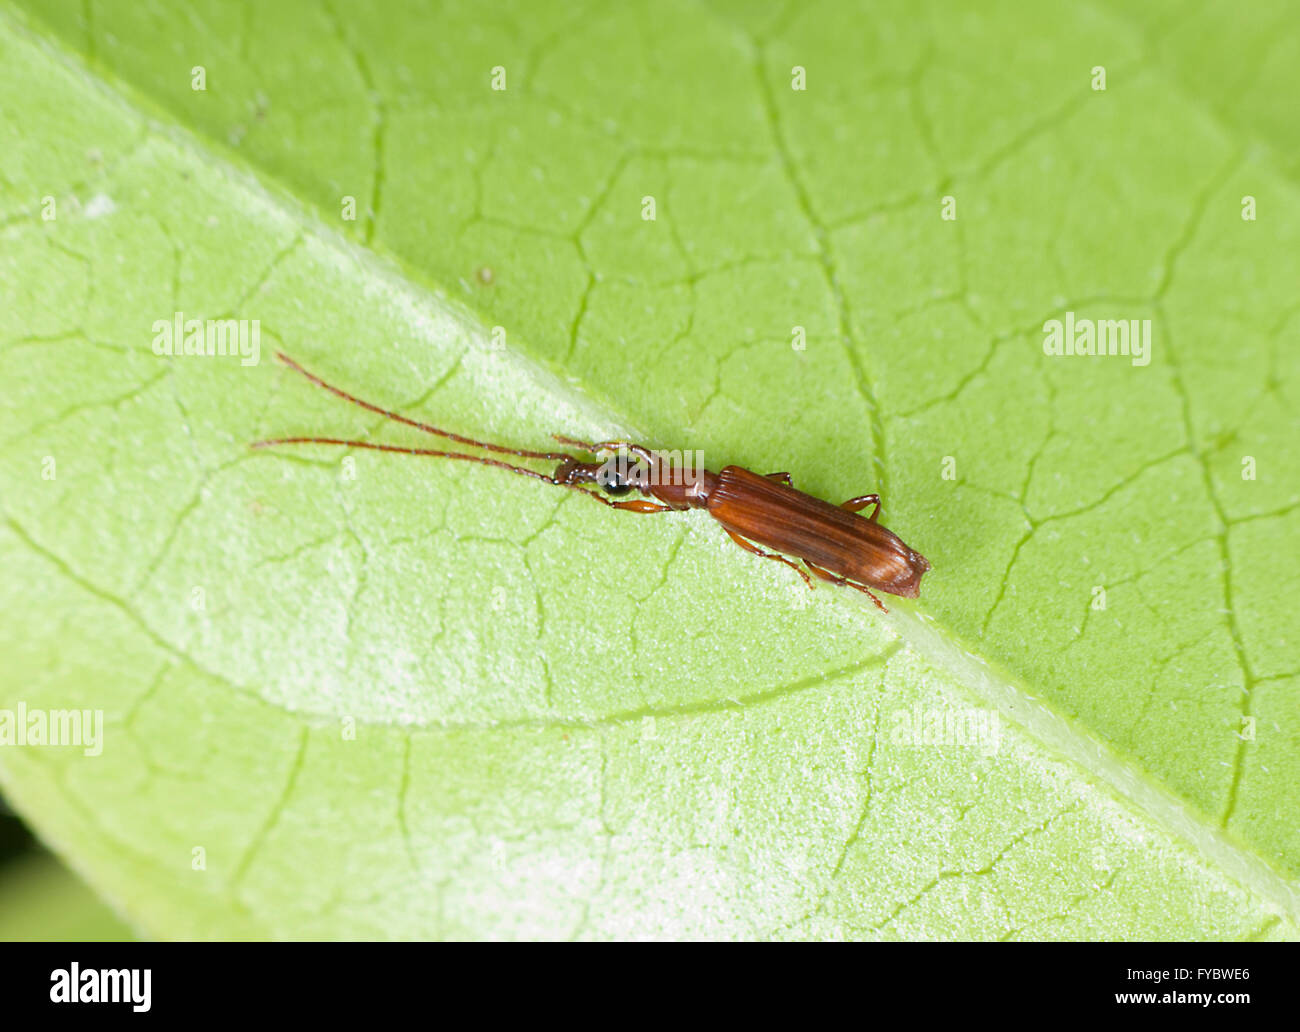 Insecte, New South Wales, Australie Banque D'Images